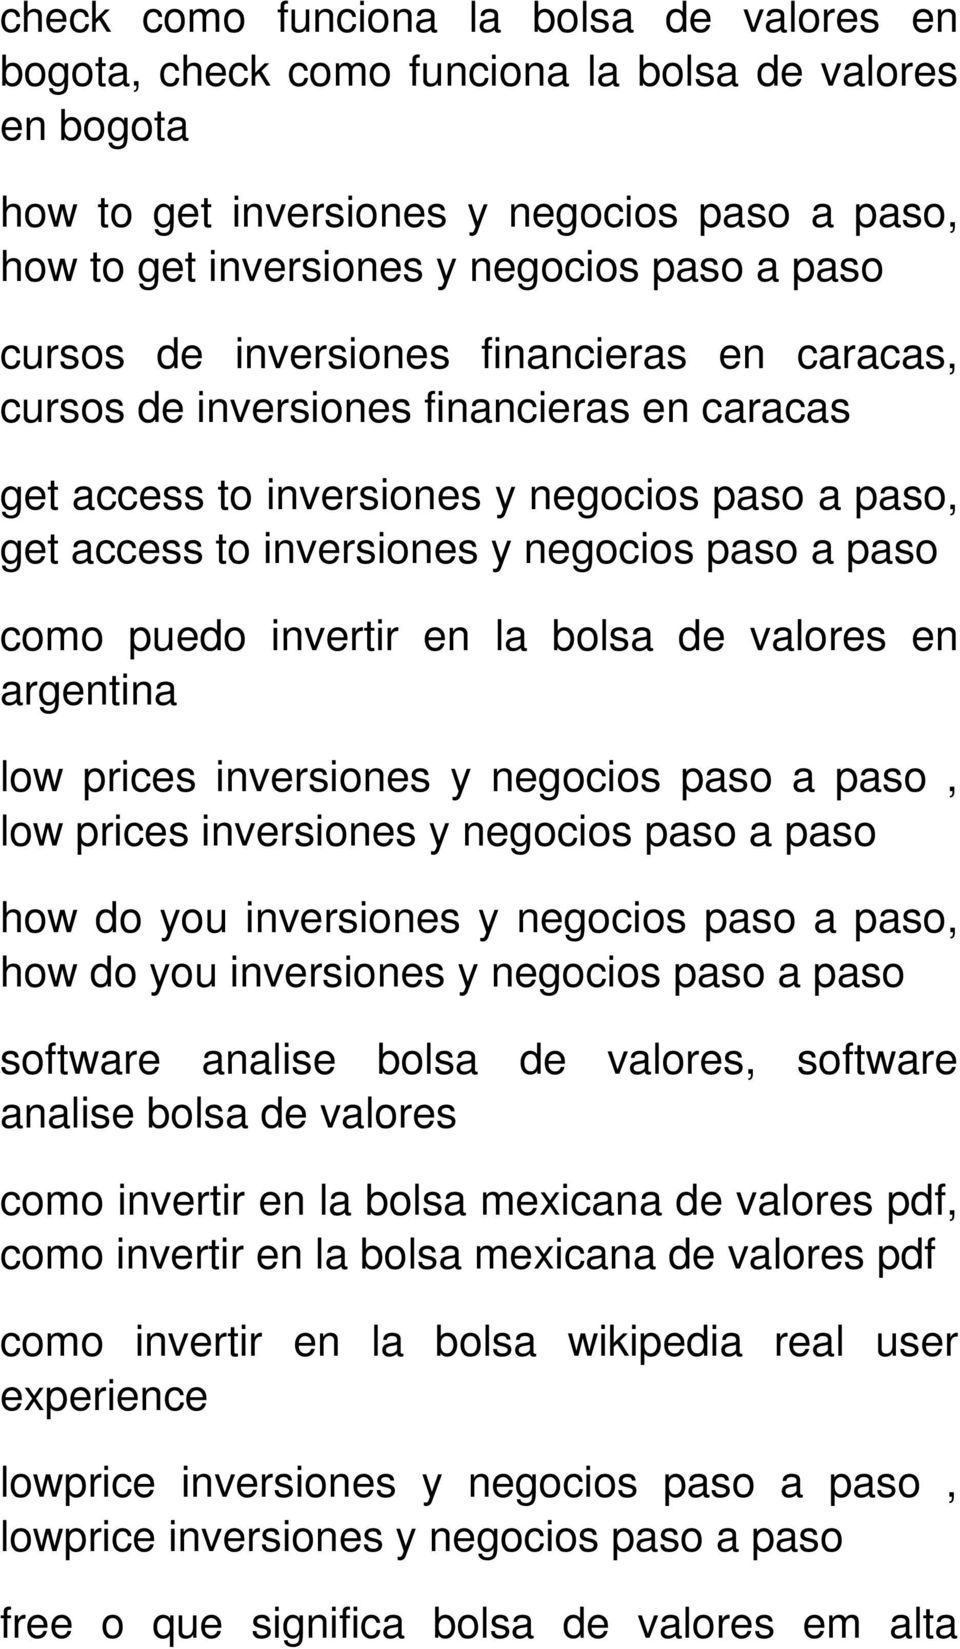 low prices inversiones how do you inversiones, how do you inversiones software analise bolsa de valores, software analise bolsa de valores como invertir en la bolsa mexicana de valores pdf,